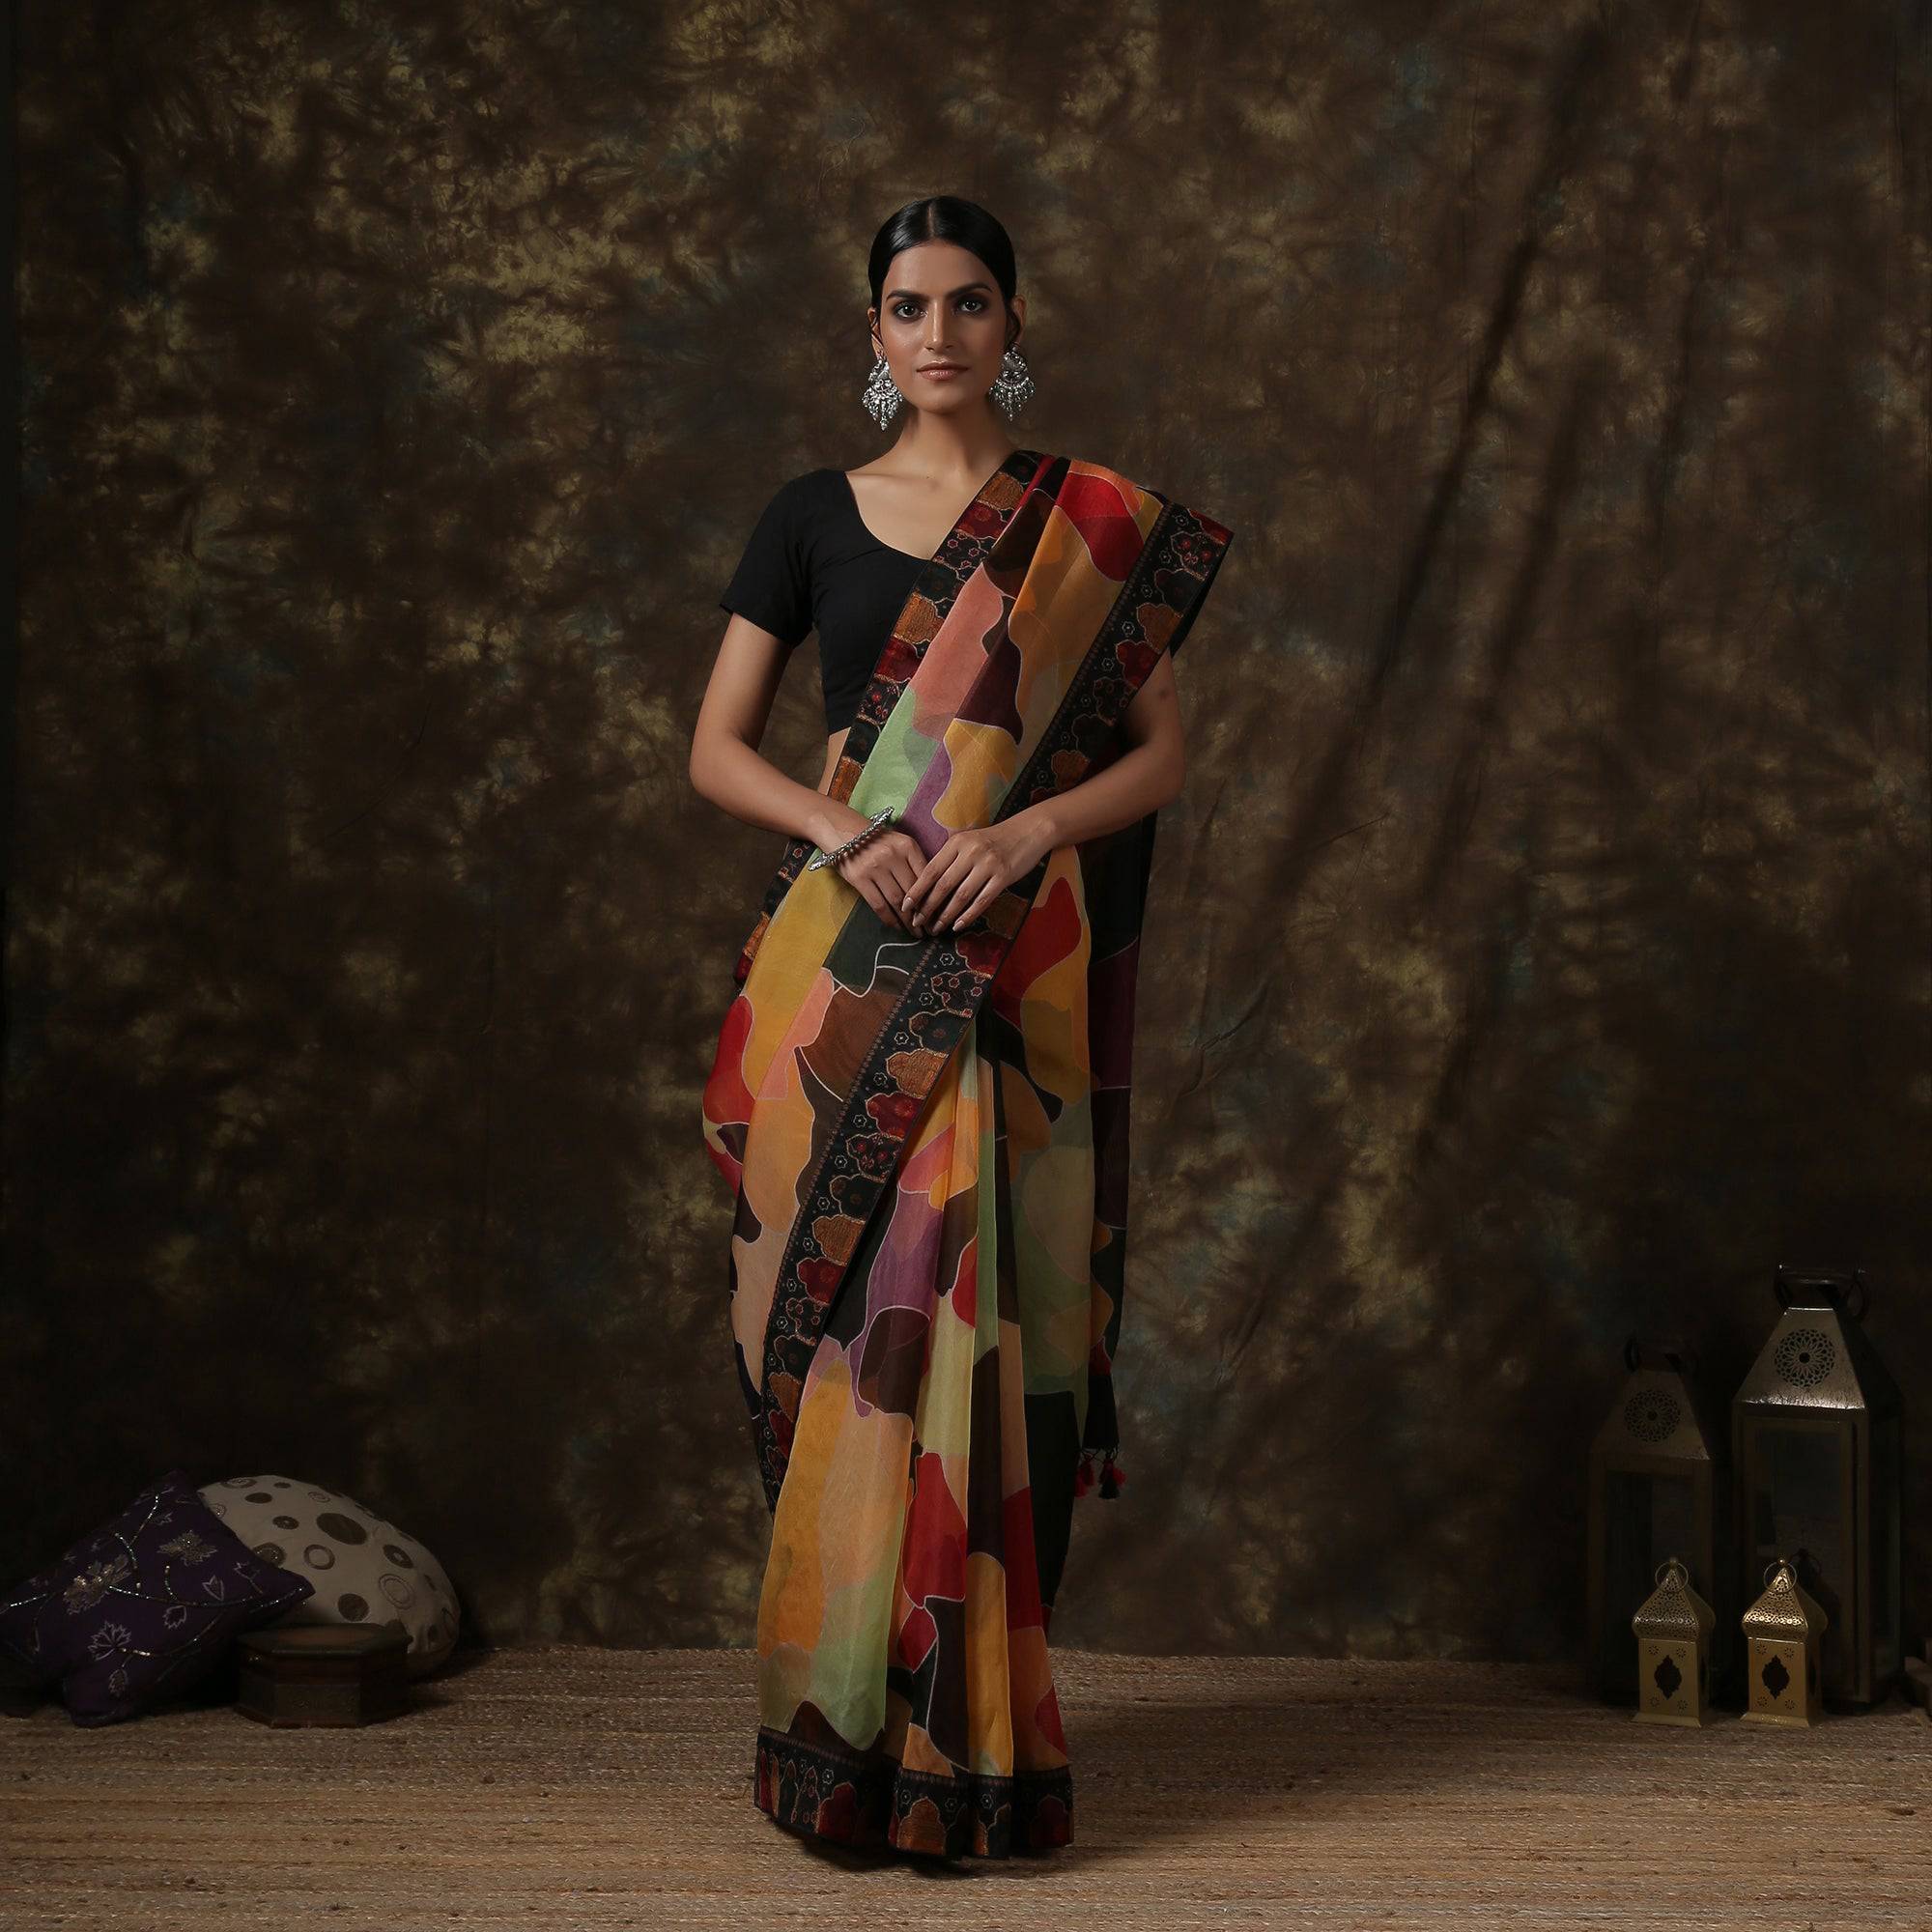 Printed Pure Tussar Silk Saree with Geometric Patterns in Brown and Purple  | Saree, Saree designs, Tussar silk saree